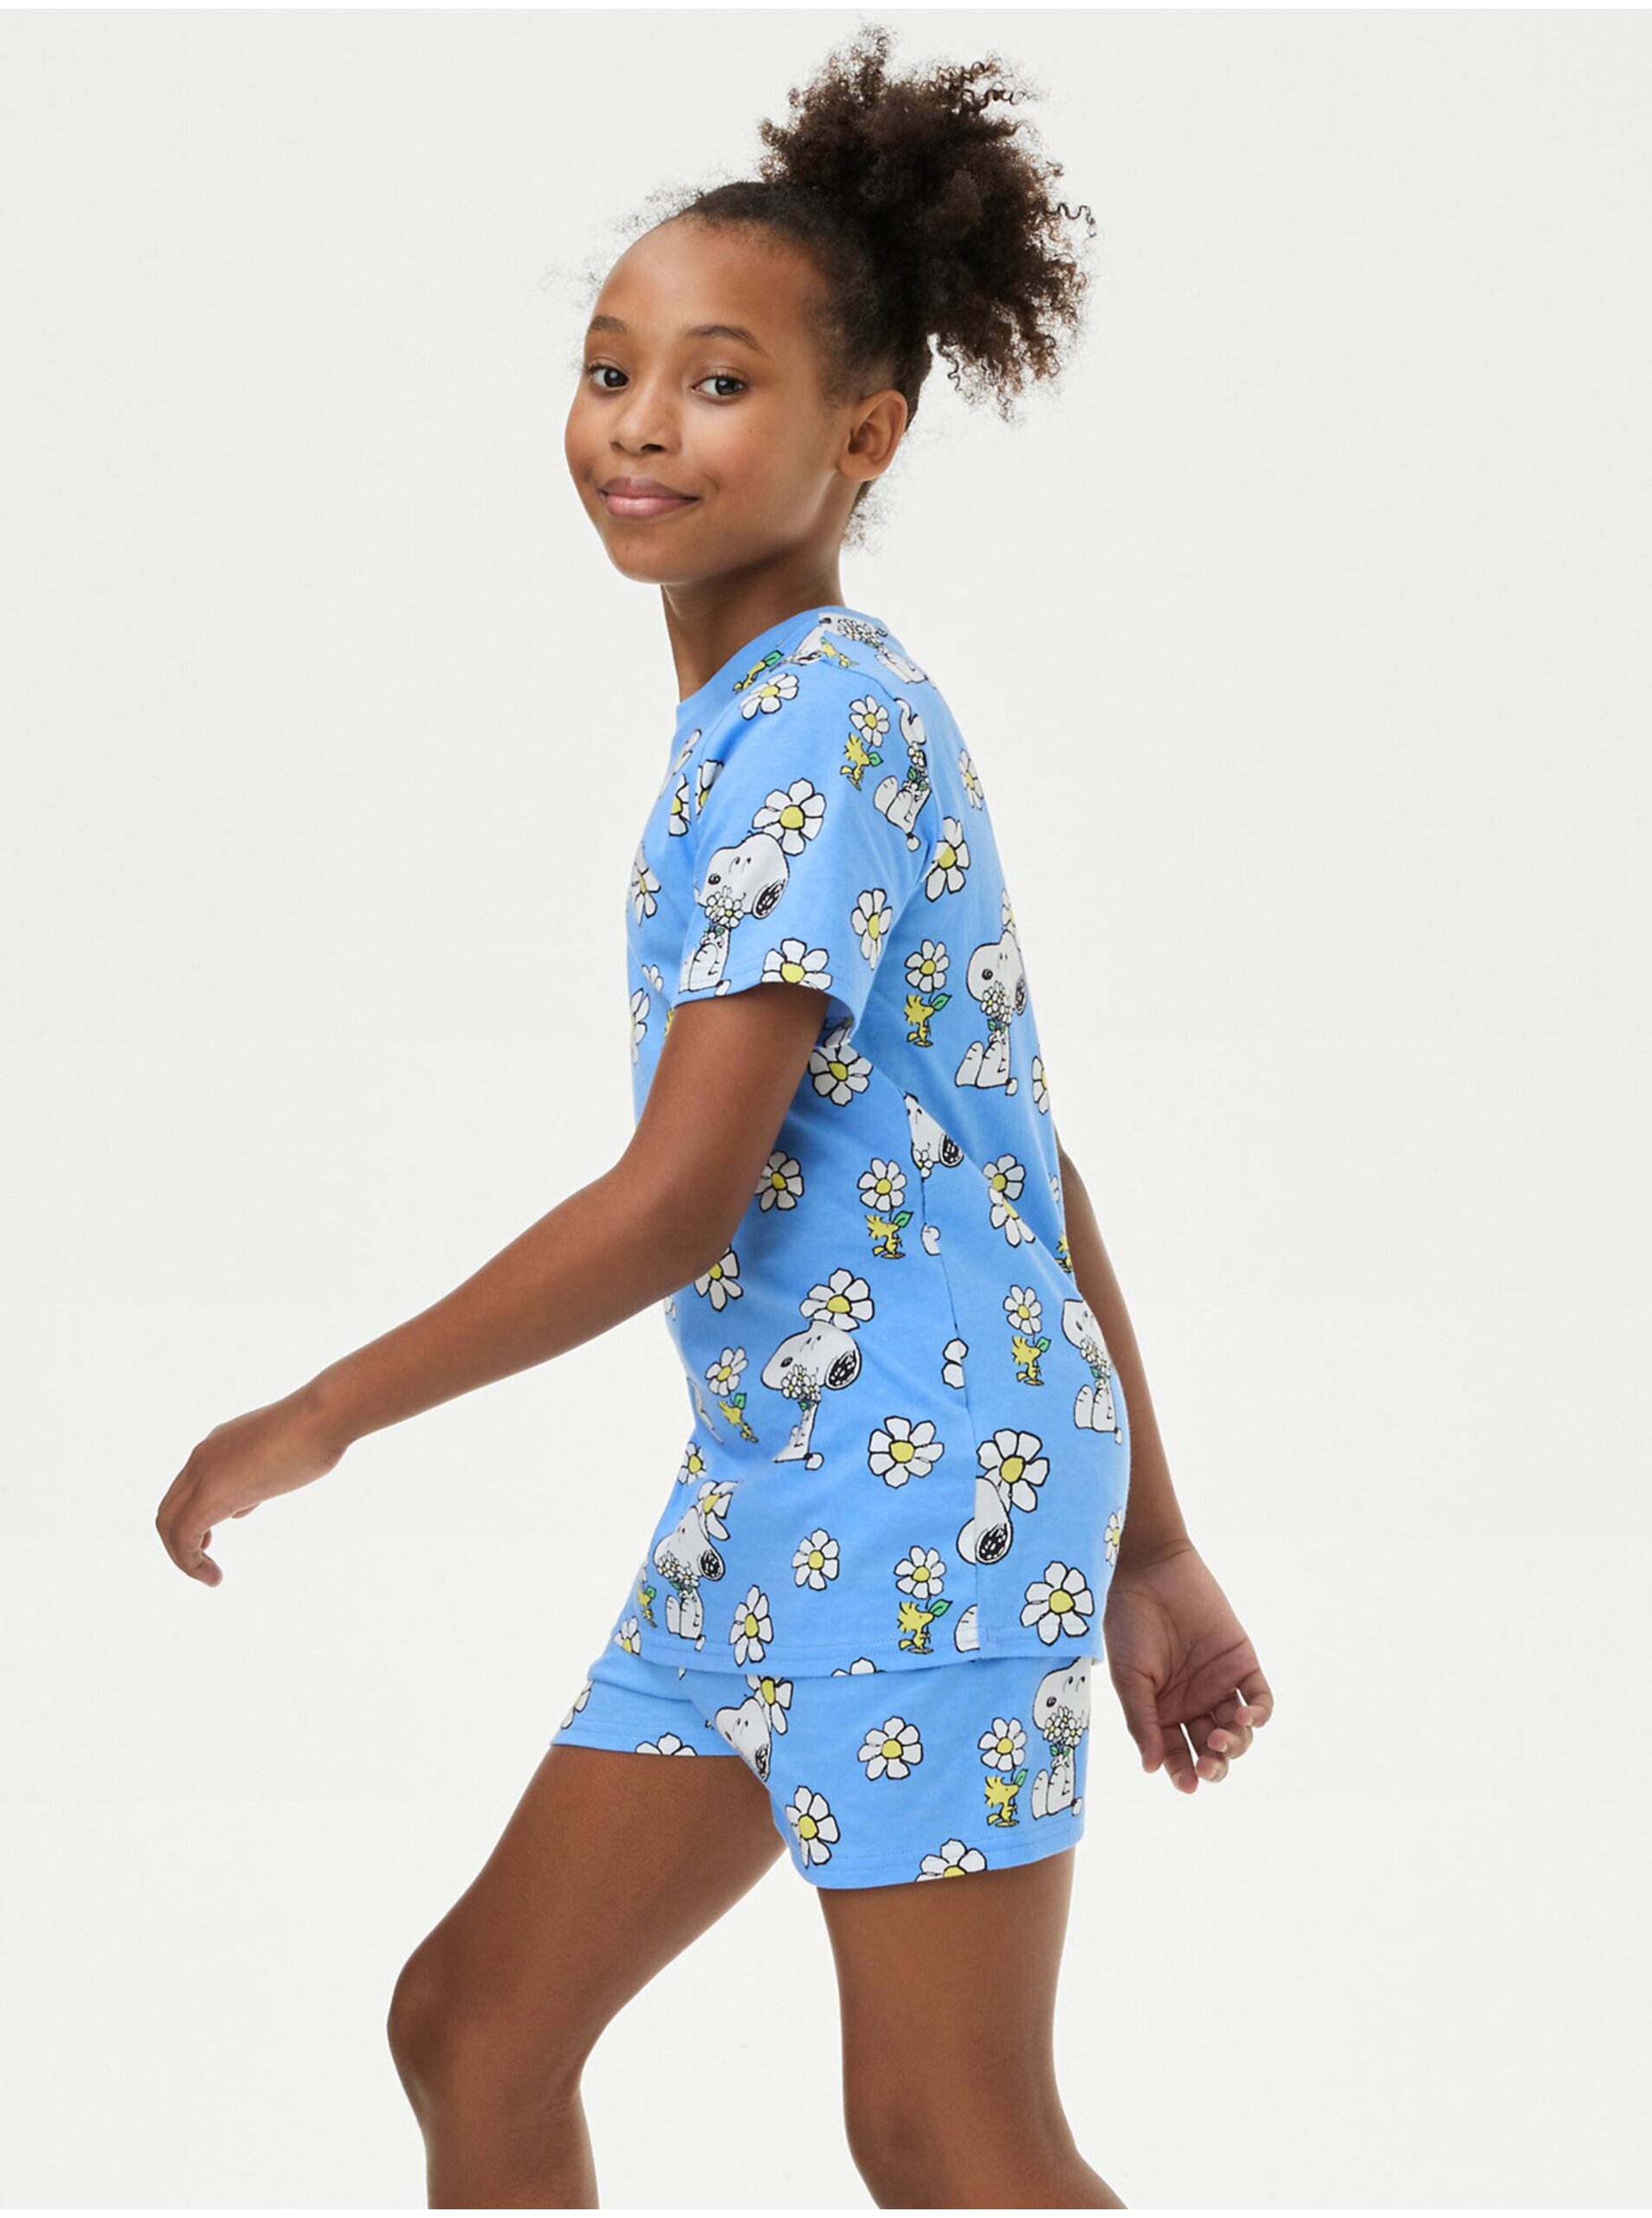 Lacno Modré dievčenské vzorované pyžamo s motivom Snoopy Marks & Spencer